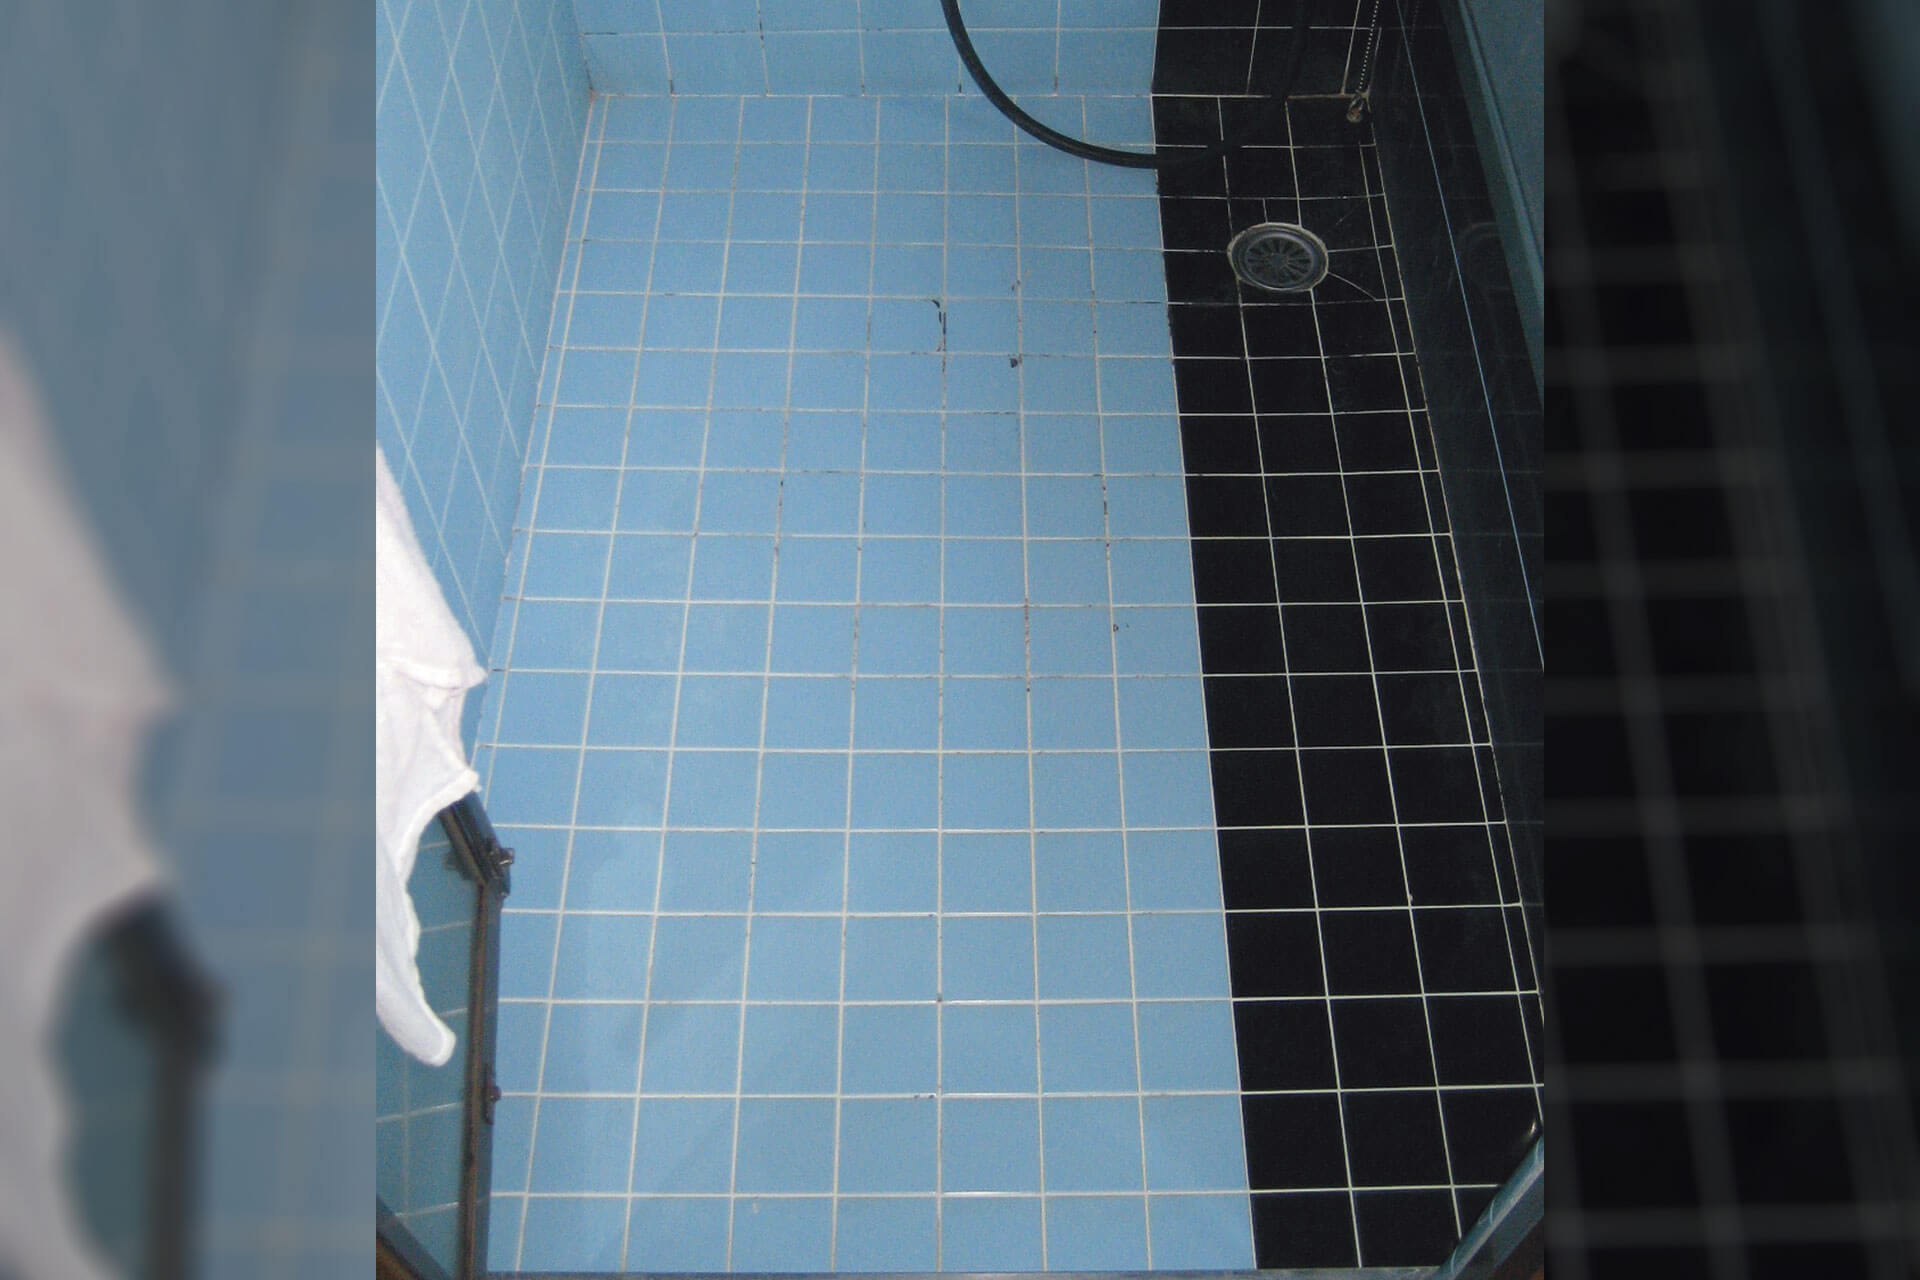 ハイブリッドストーン アベイラス スーパー浴室床材で改修する前の青と黒のタイル床